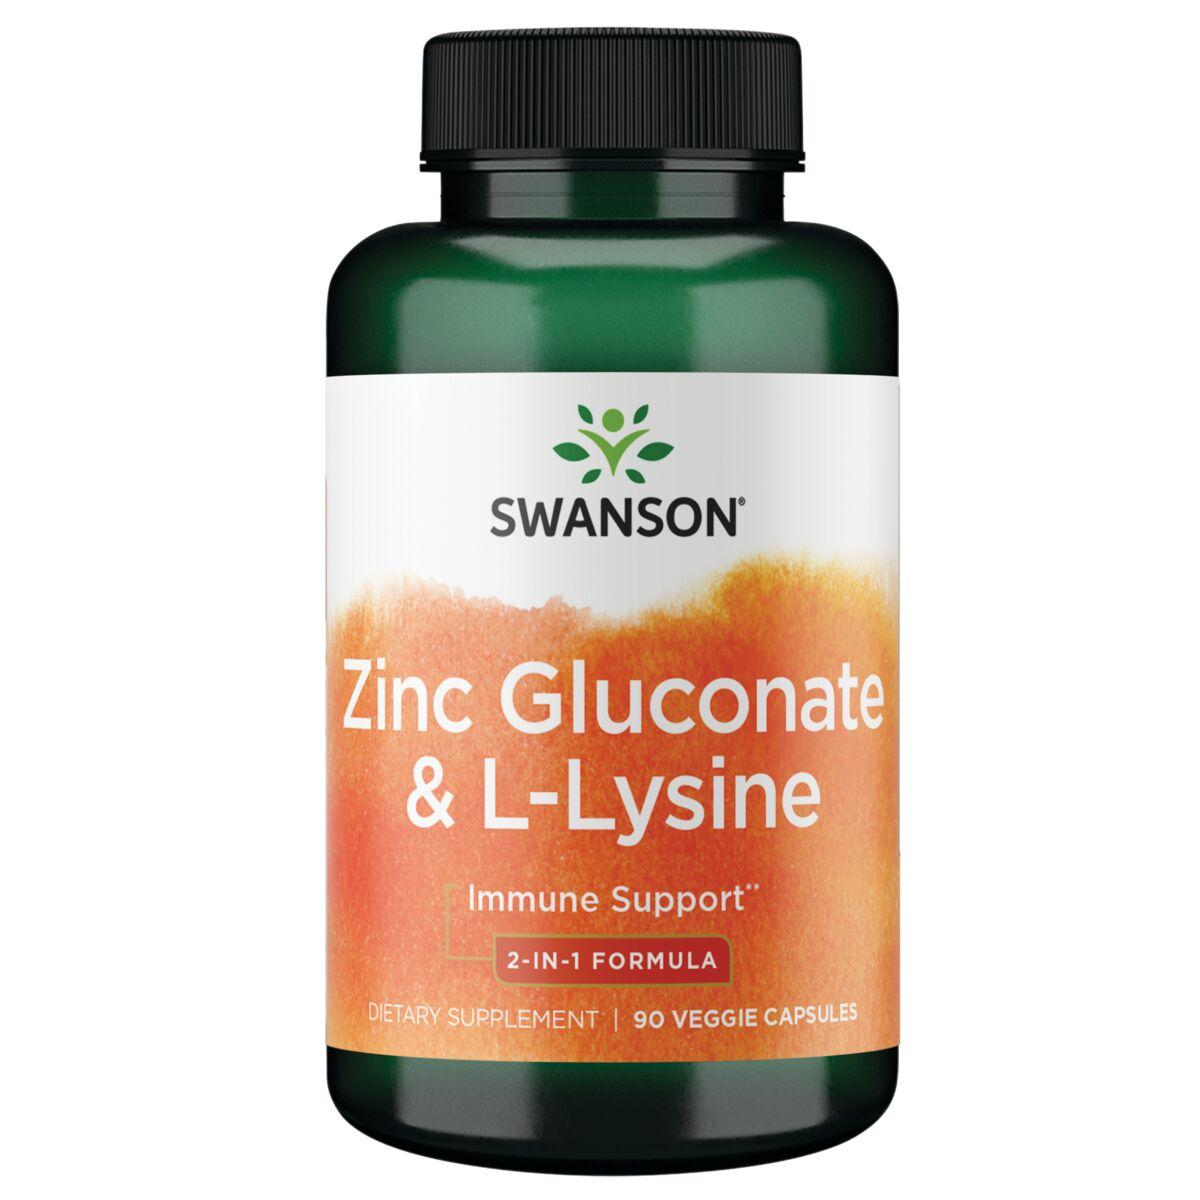 Swanson Premium Zinc Gluconate & L-Lysine - 2-In-1 Formula Supplement Vitamin 90 Veg Caps